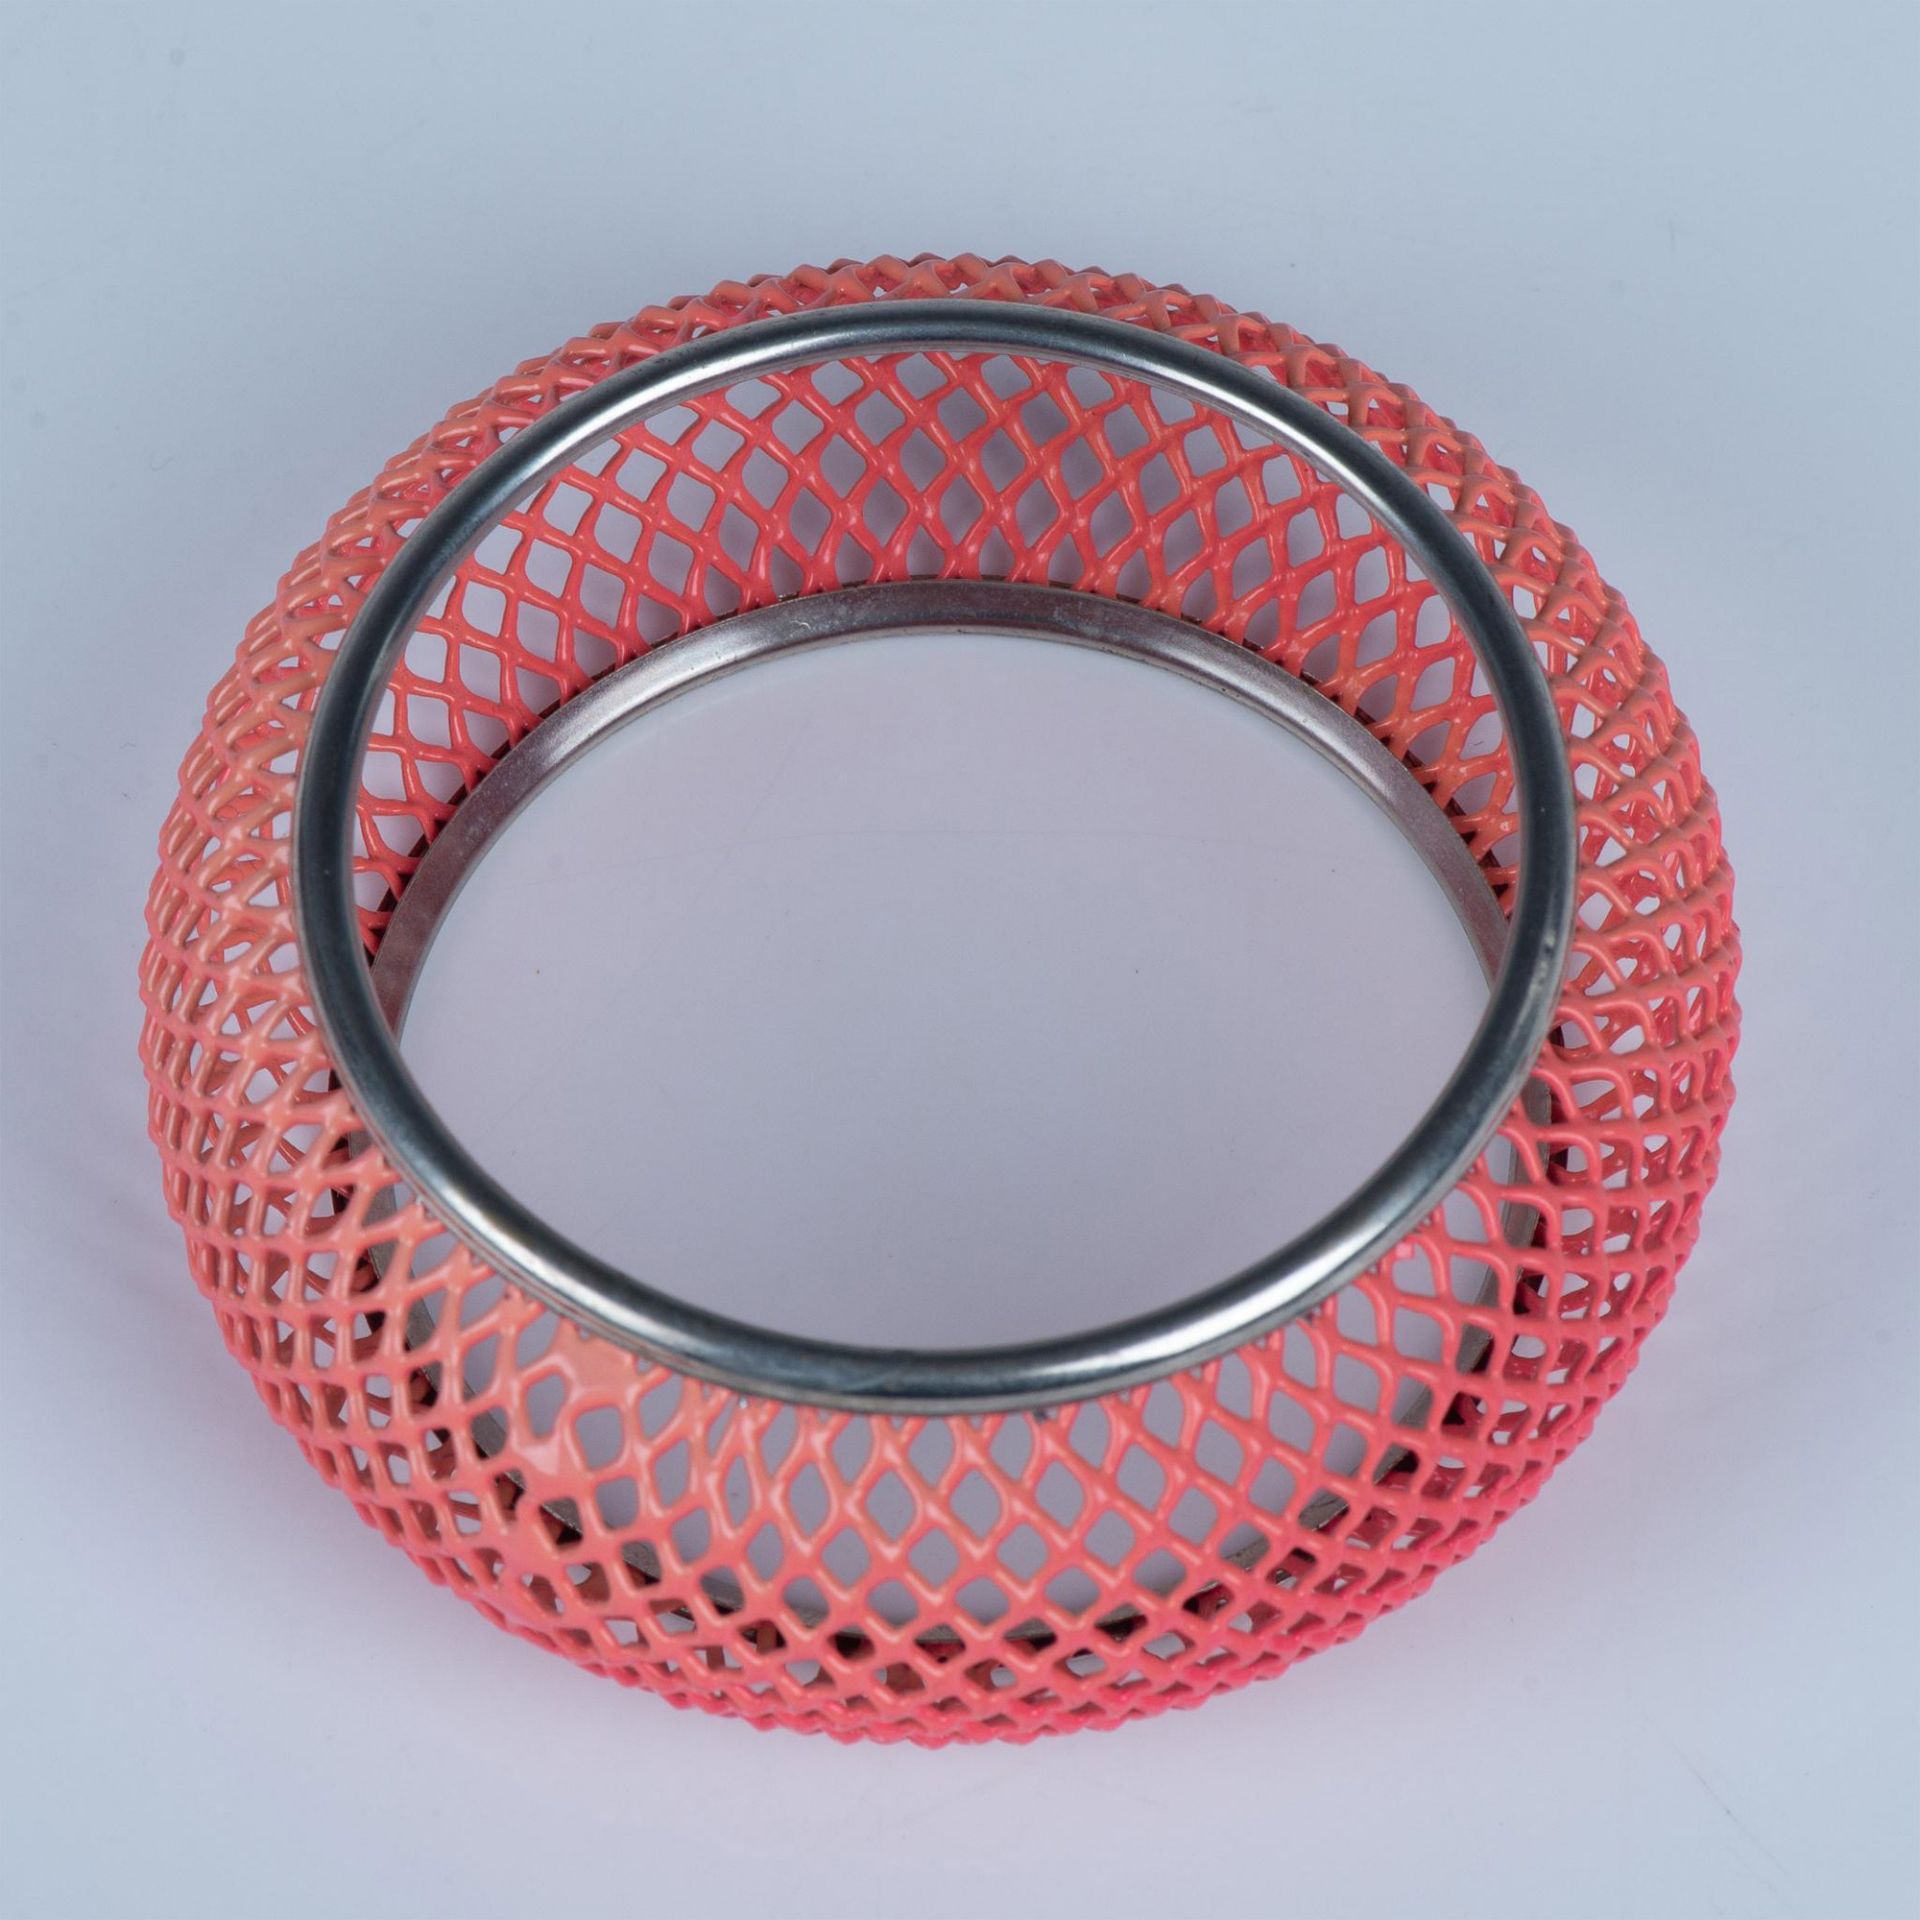 Retro Pink Mesh Metal Bracelet - Image 2 of 2